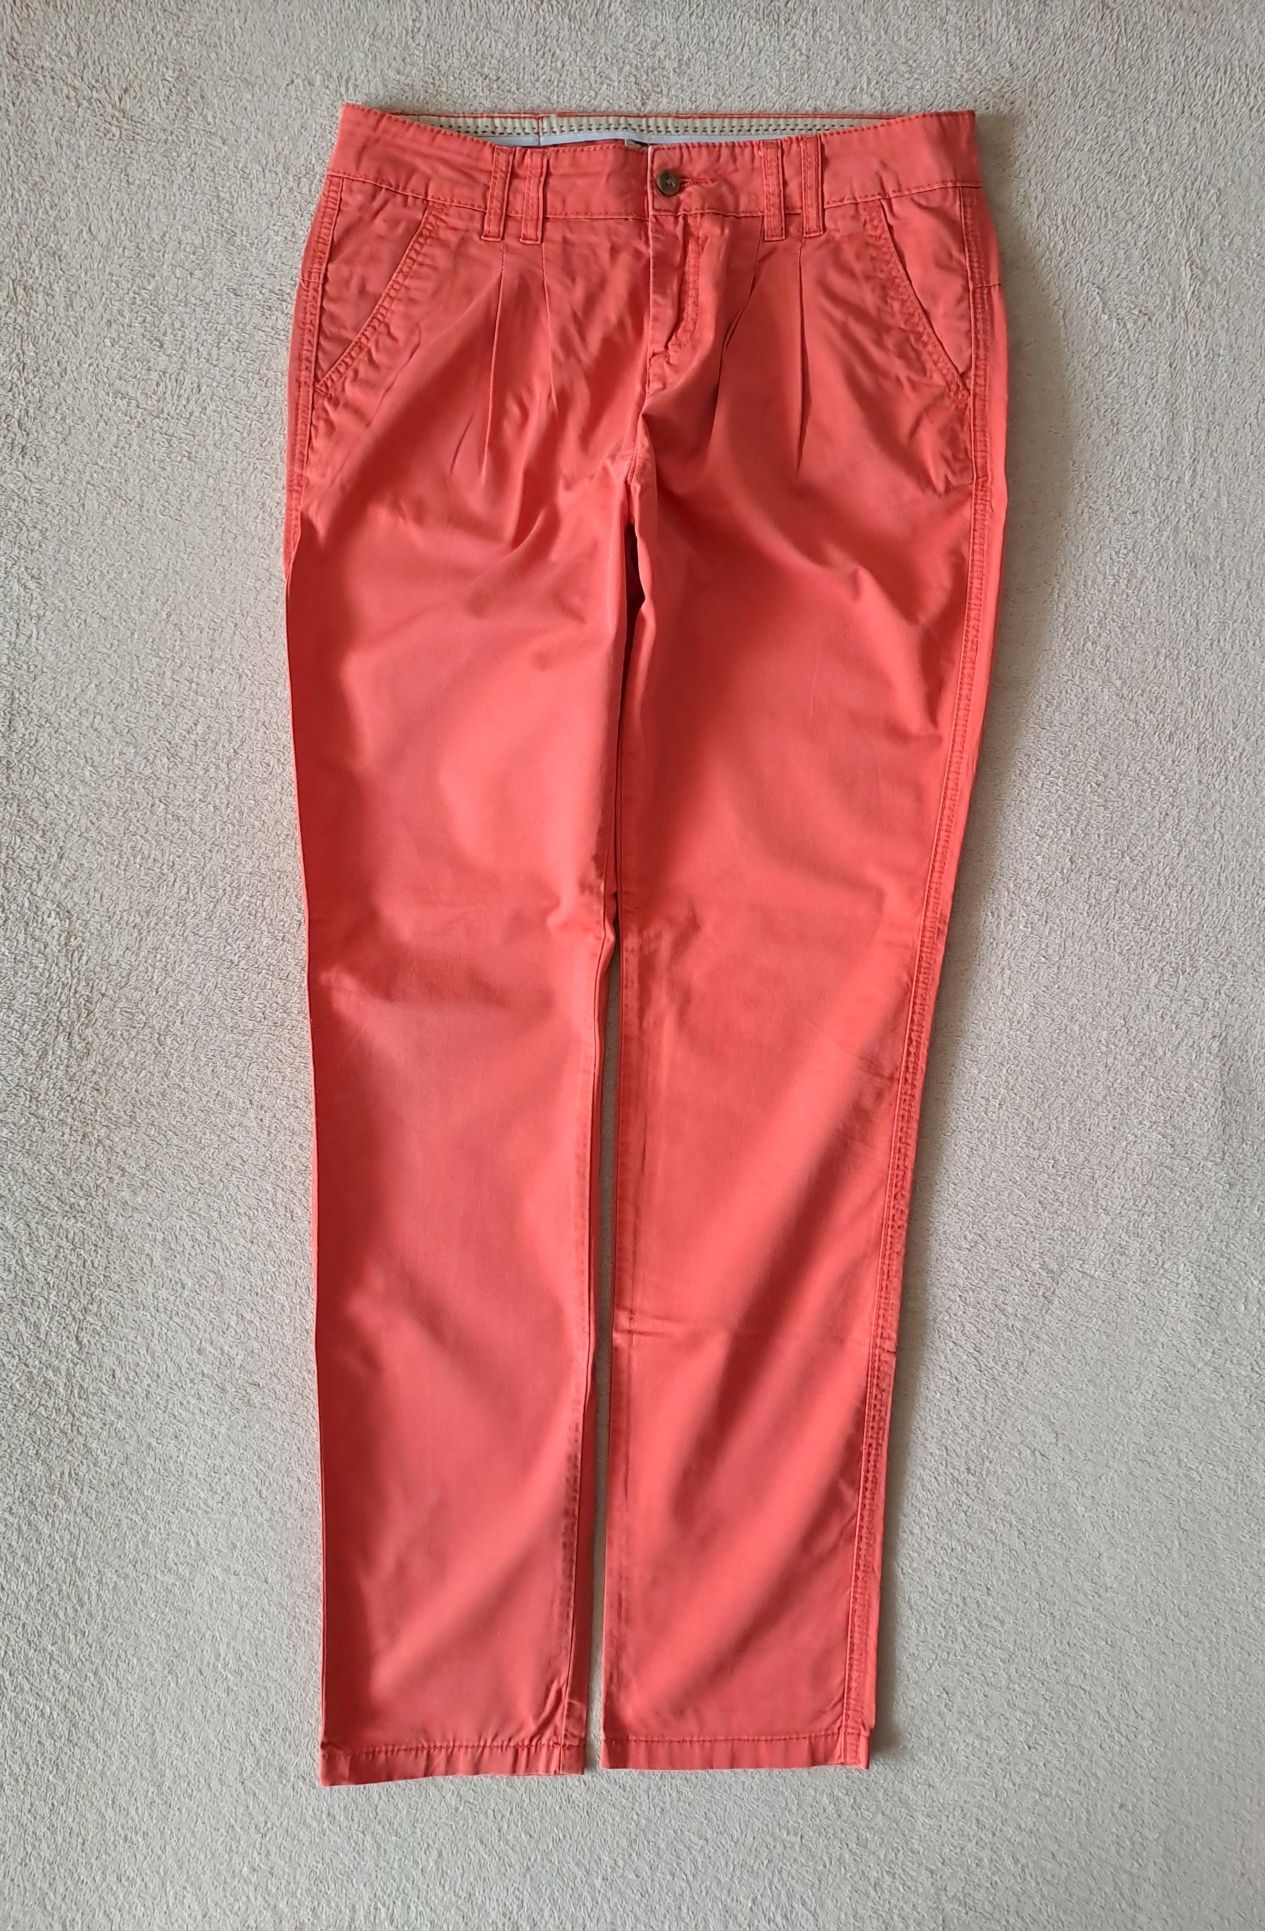 spodnie chino REVIEW roz. L styl klasyka moda komfort